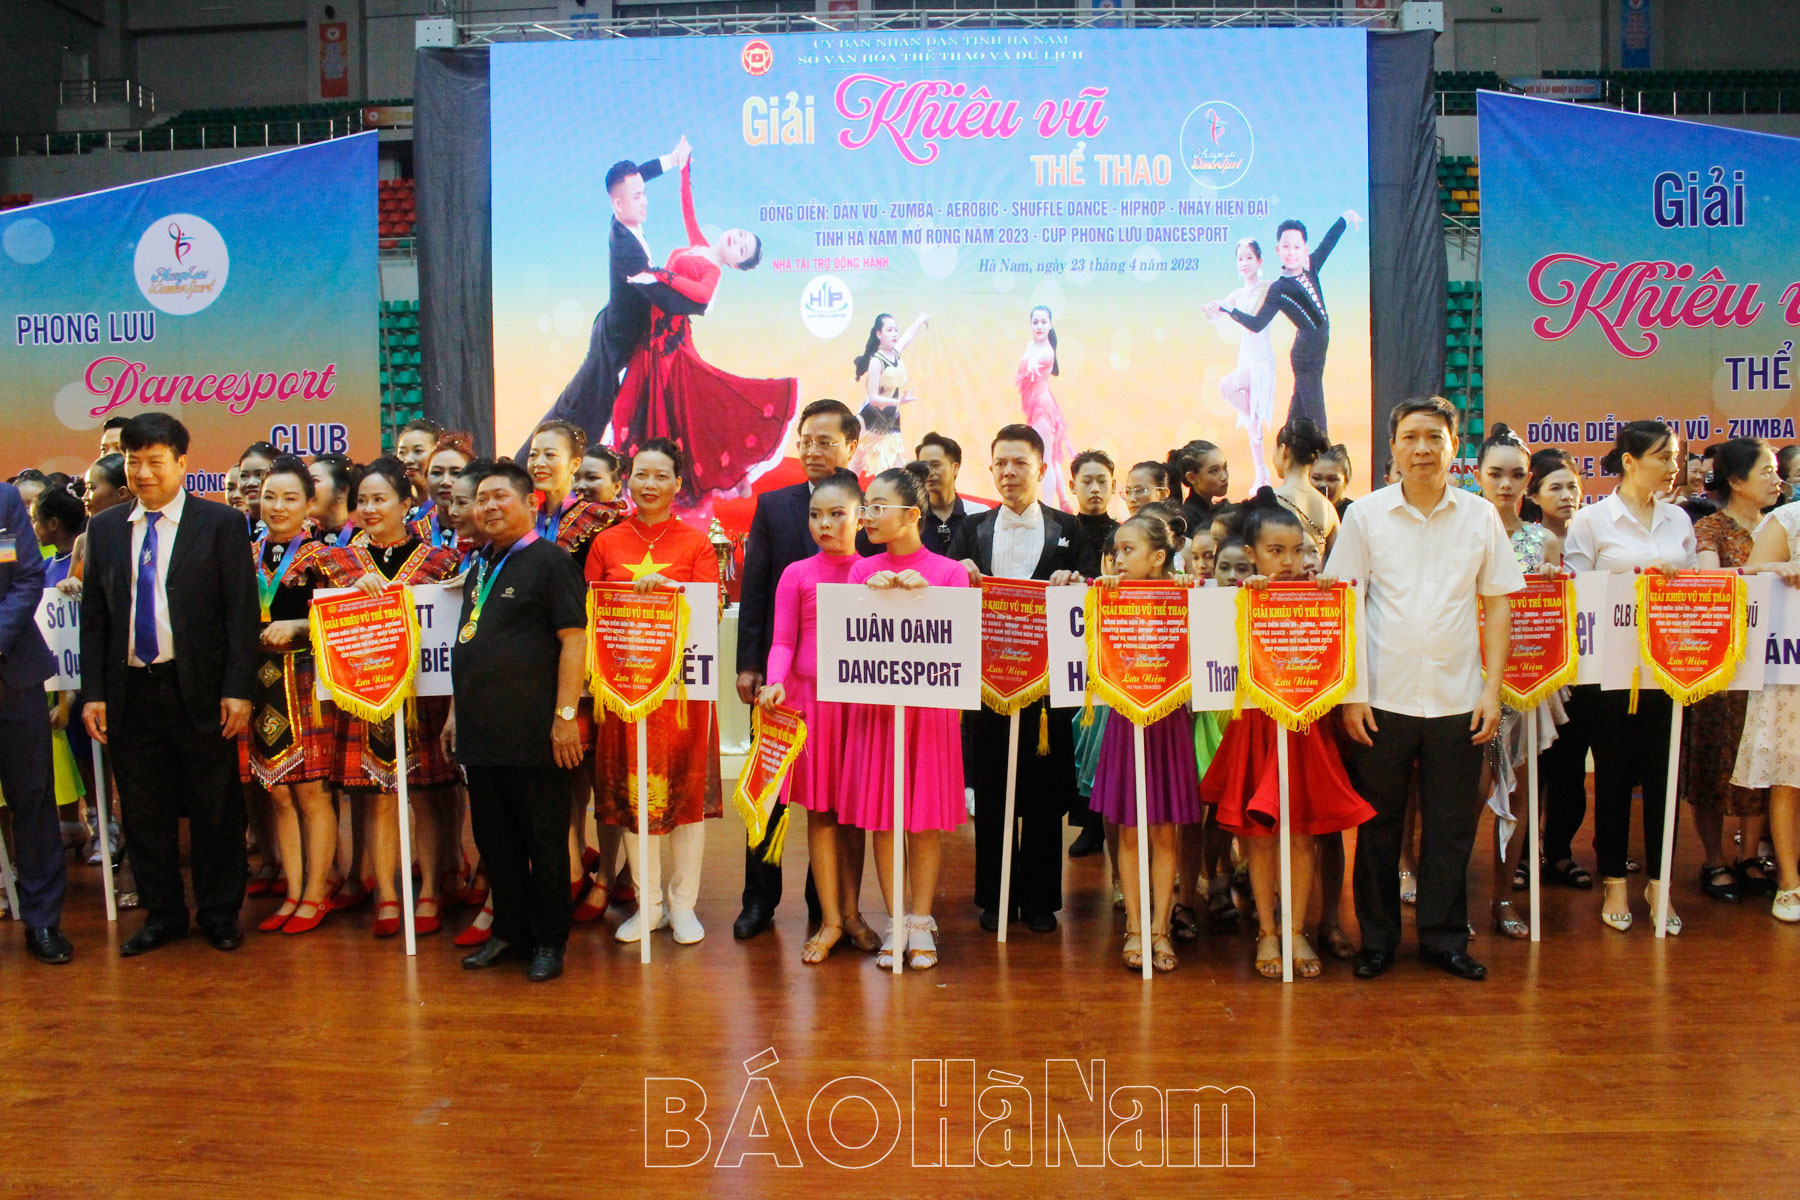 Gần 1200 VĐV tham gia Giải khiêu vũ tỉnh Hà Nam mở rộng năm 2023